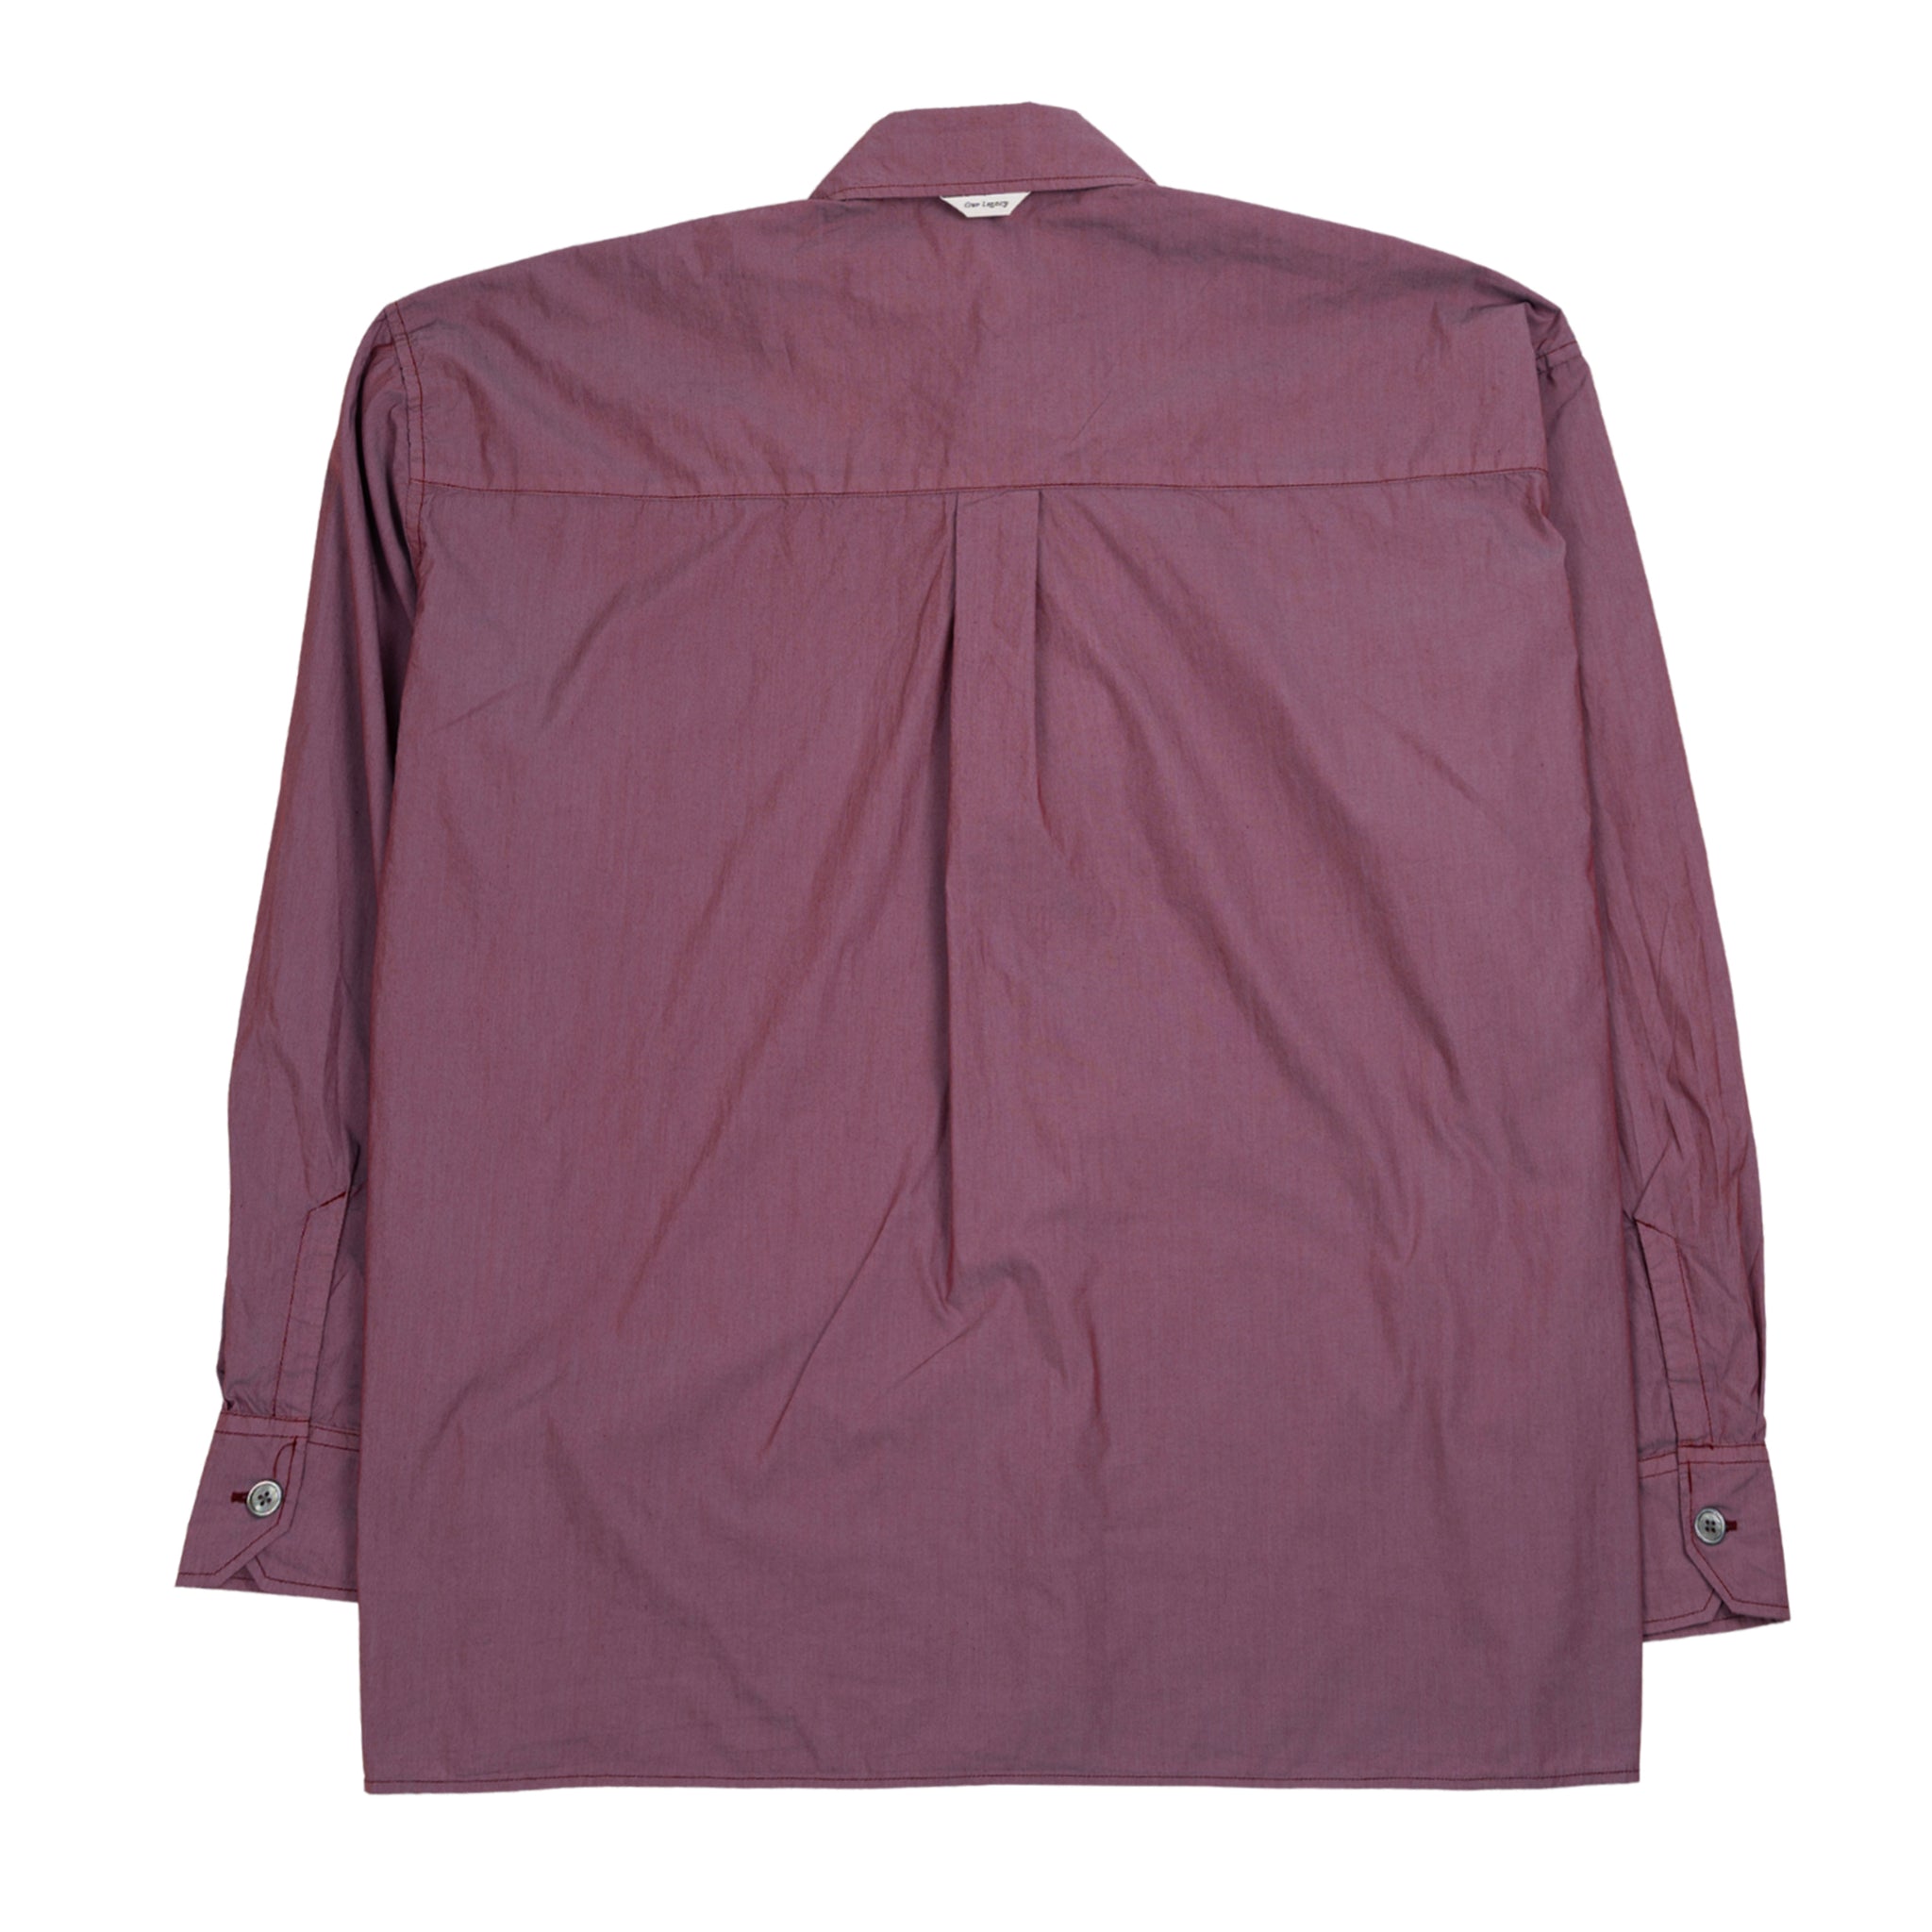 Borrowed camicia in lampone